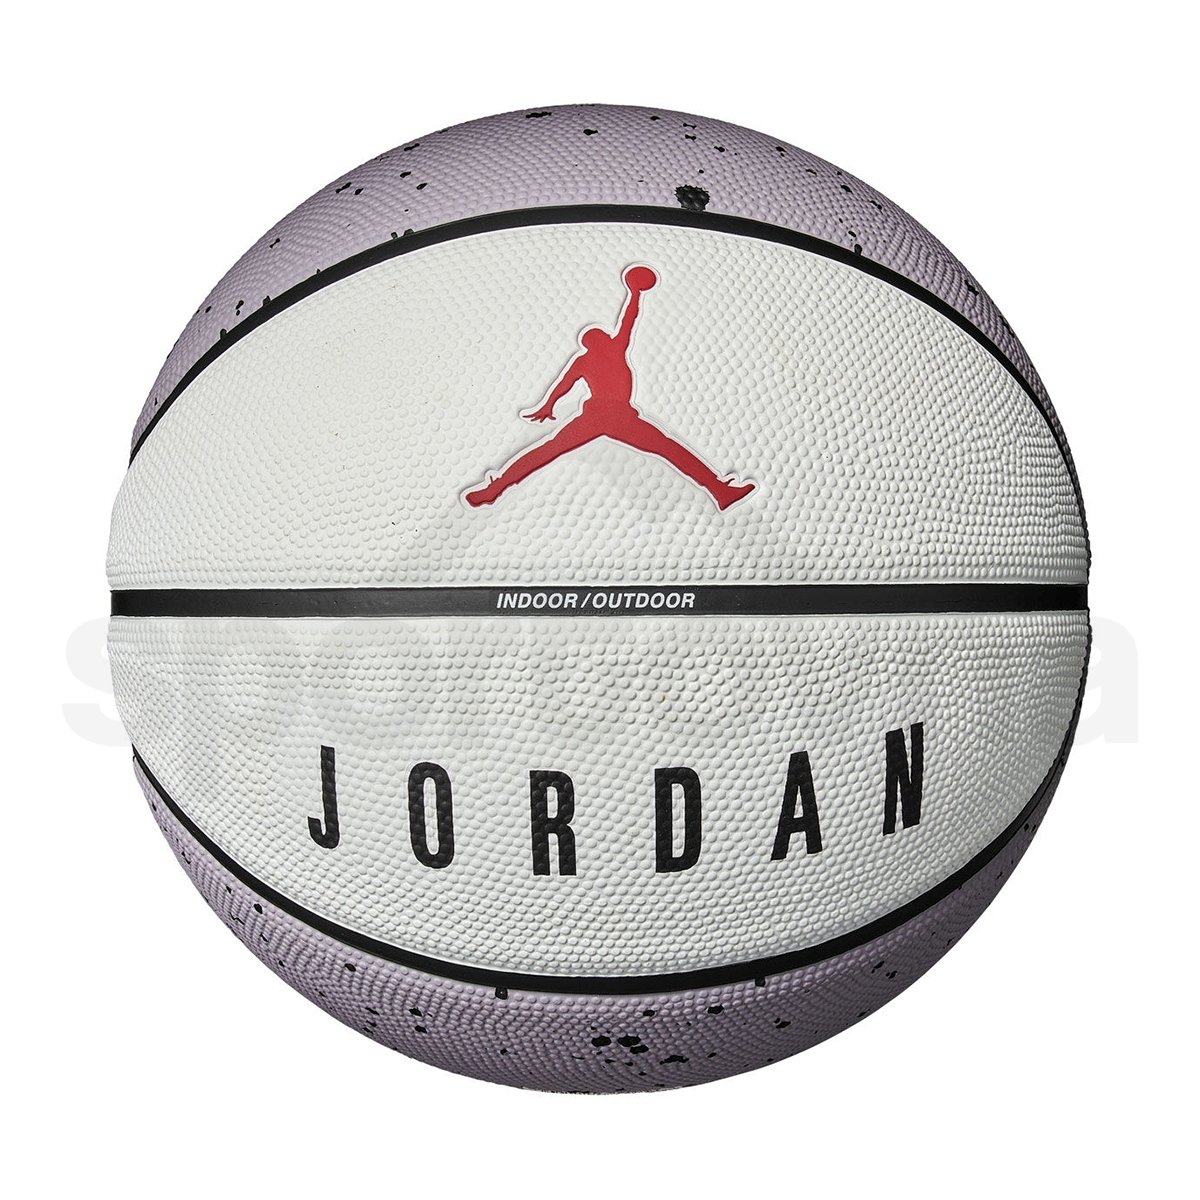 Basketbalový míč Nike Jordan Playground 2.0 8P - šedá/bílá